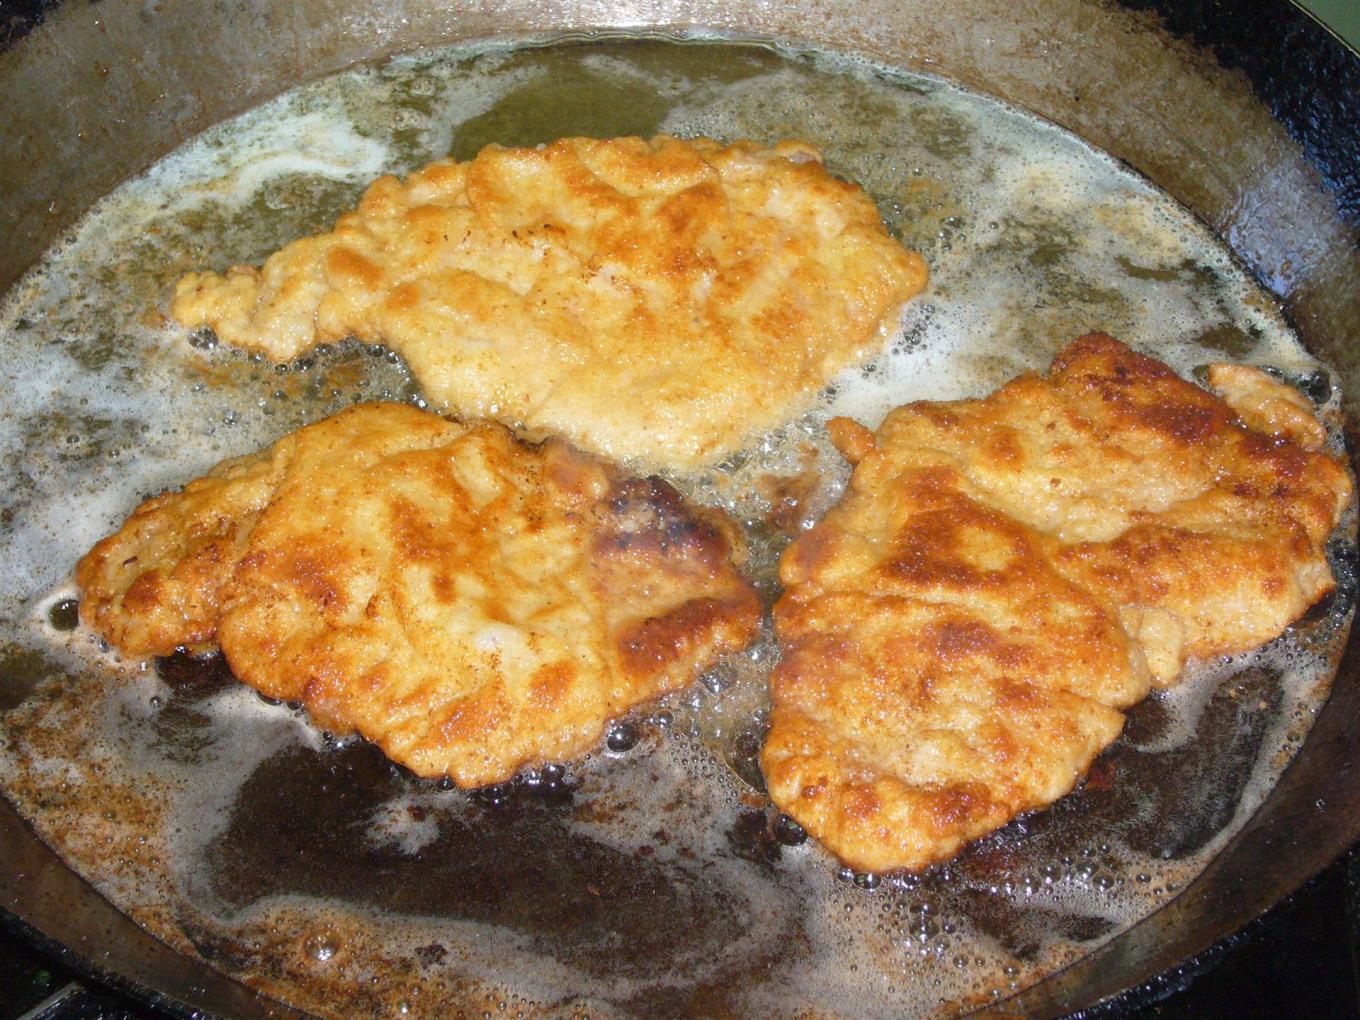 Schnitzel - fried in clarified butter